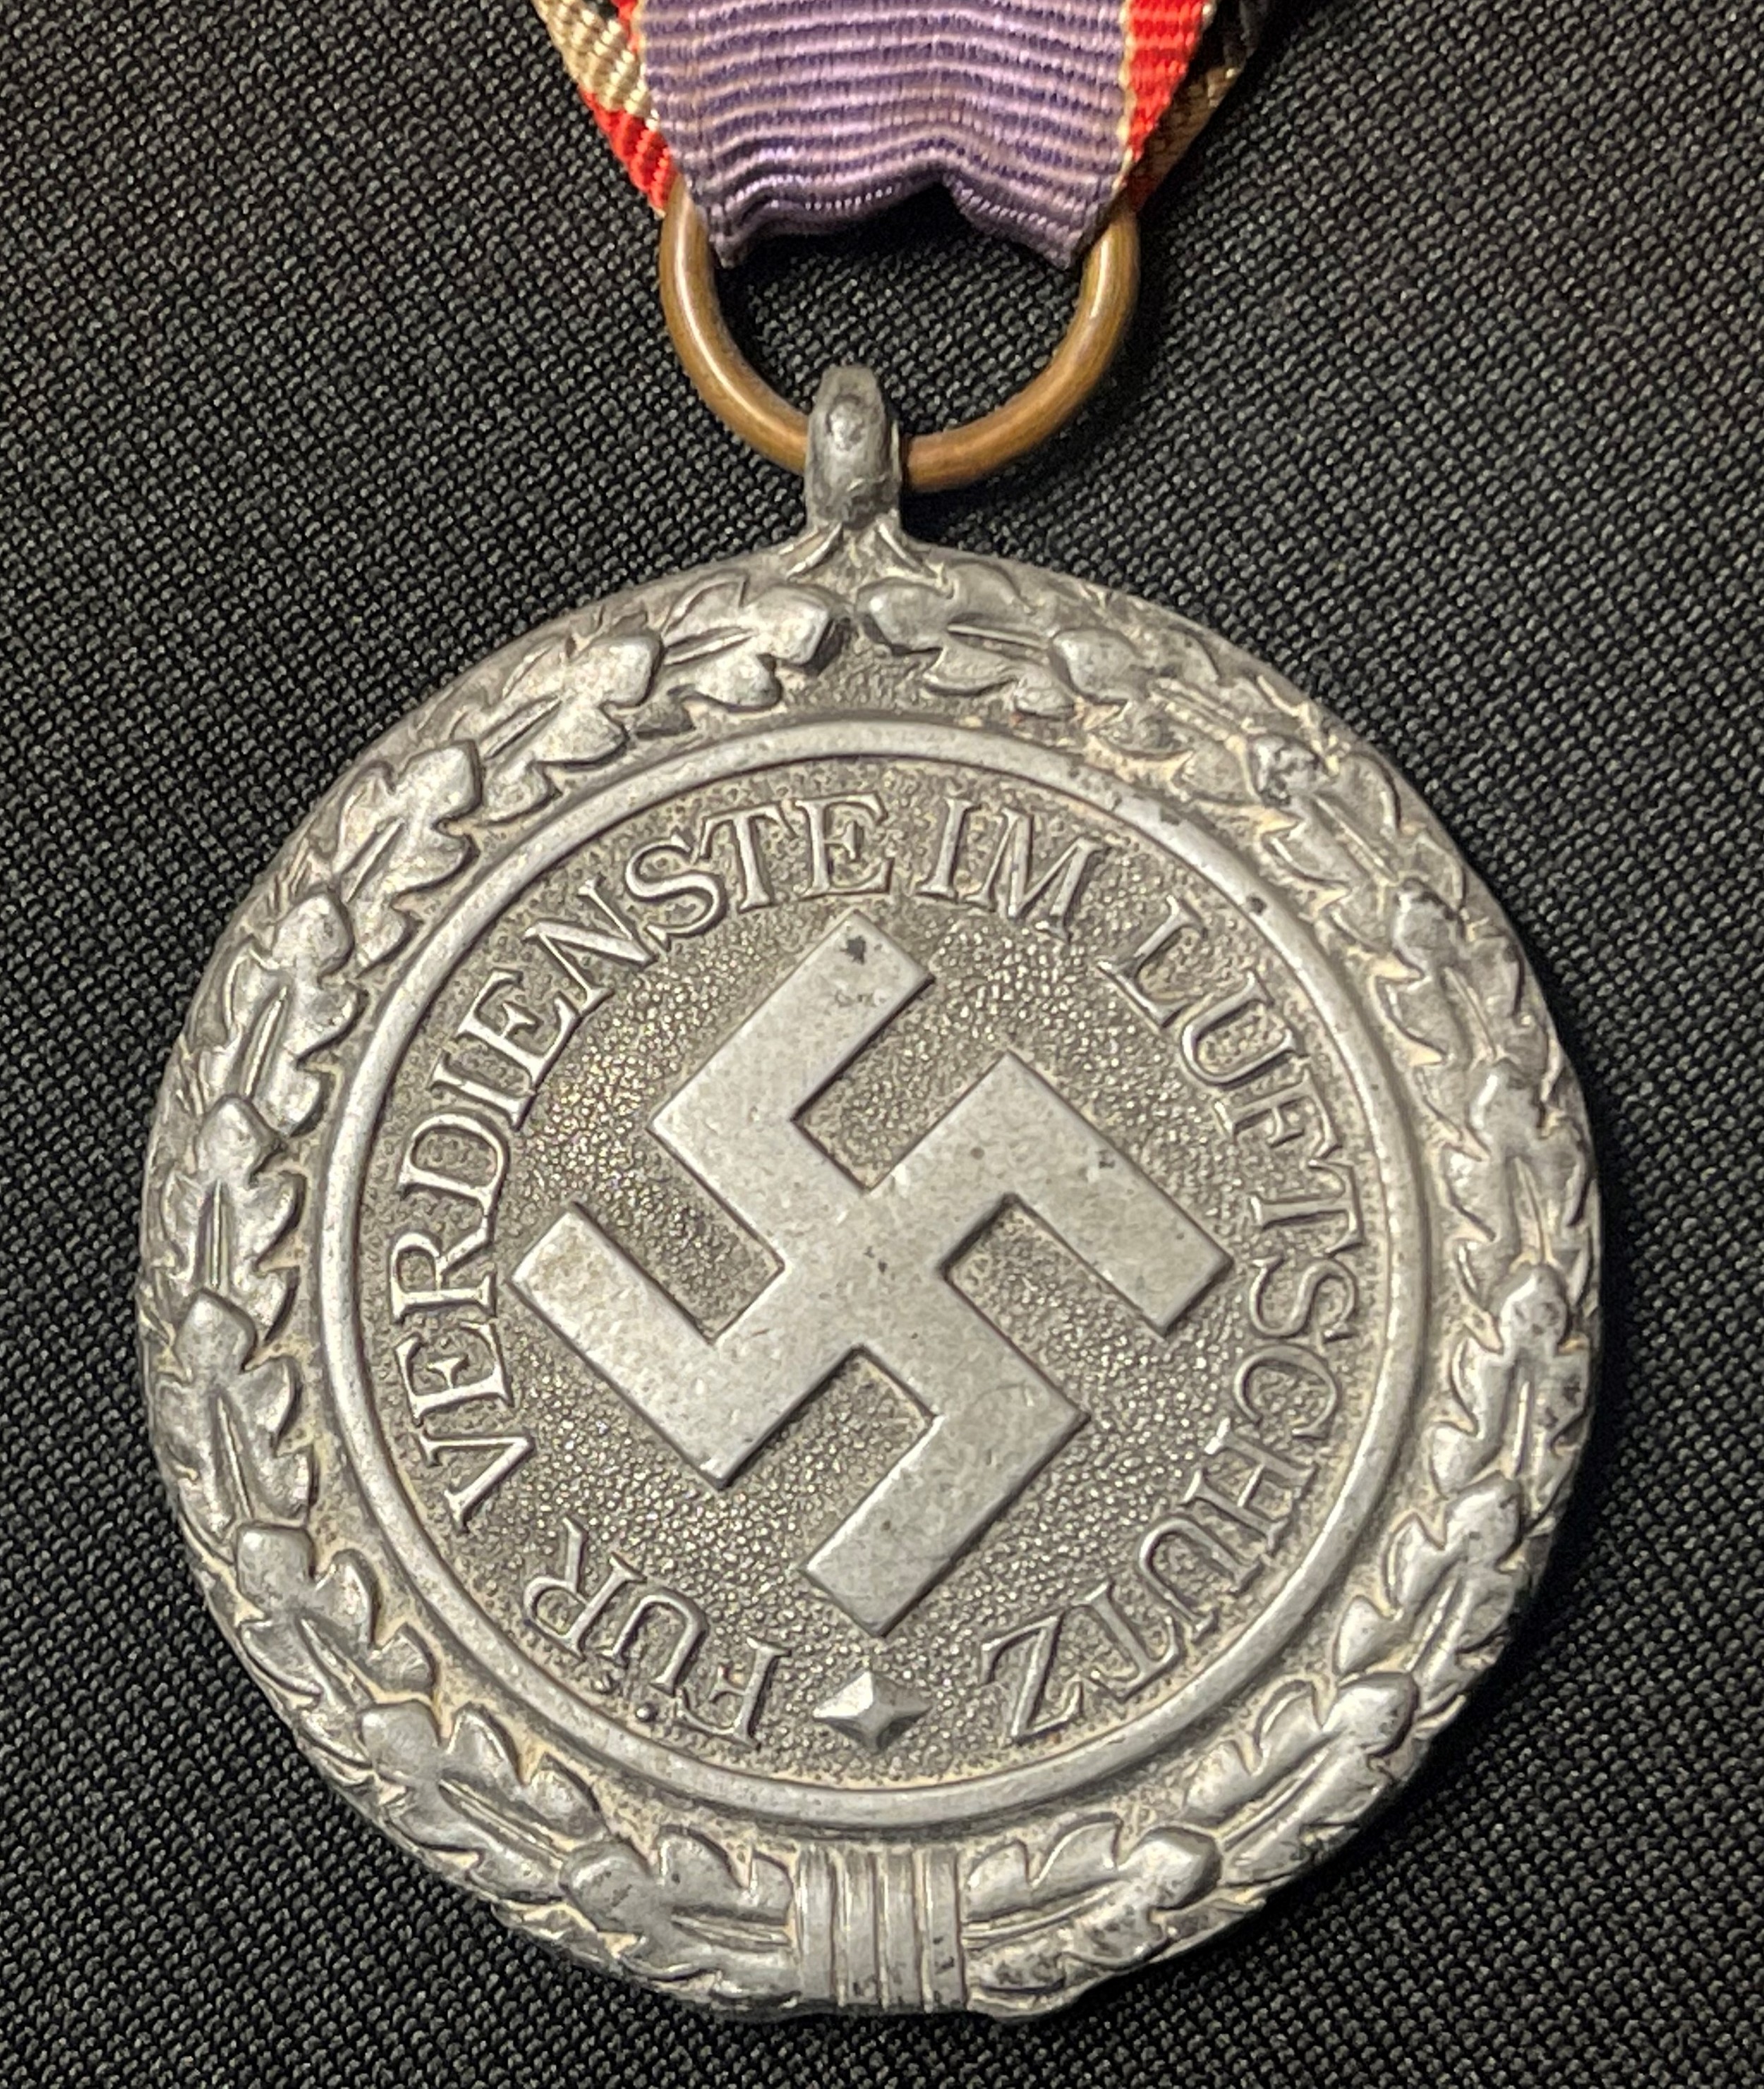 WW2 Third Reich Luftschutz-Ehrenzeichen 2. Stufe - Air Warden Honour Award 2nd Class. Complete - Image 2 of 4